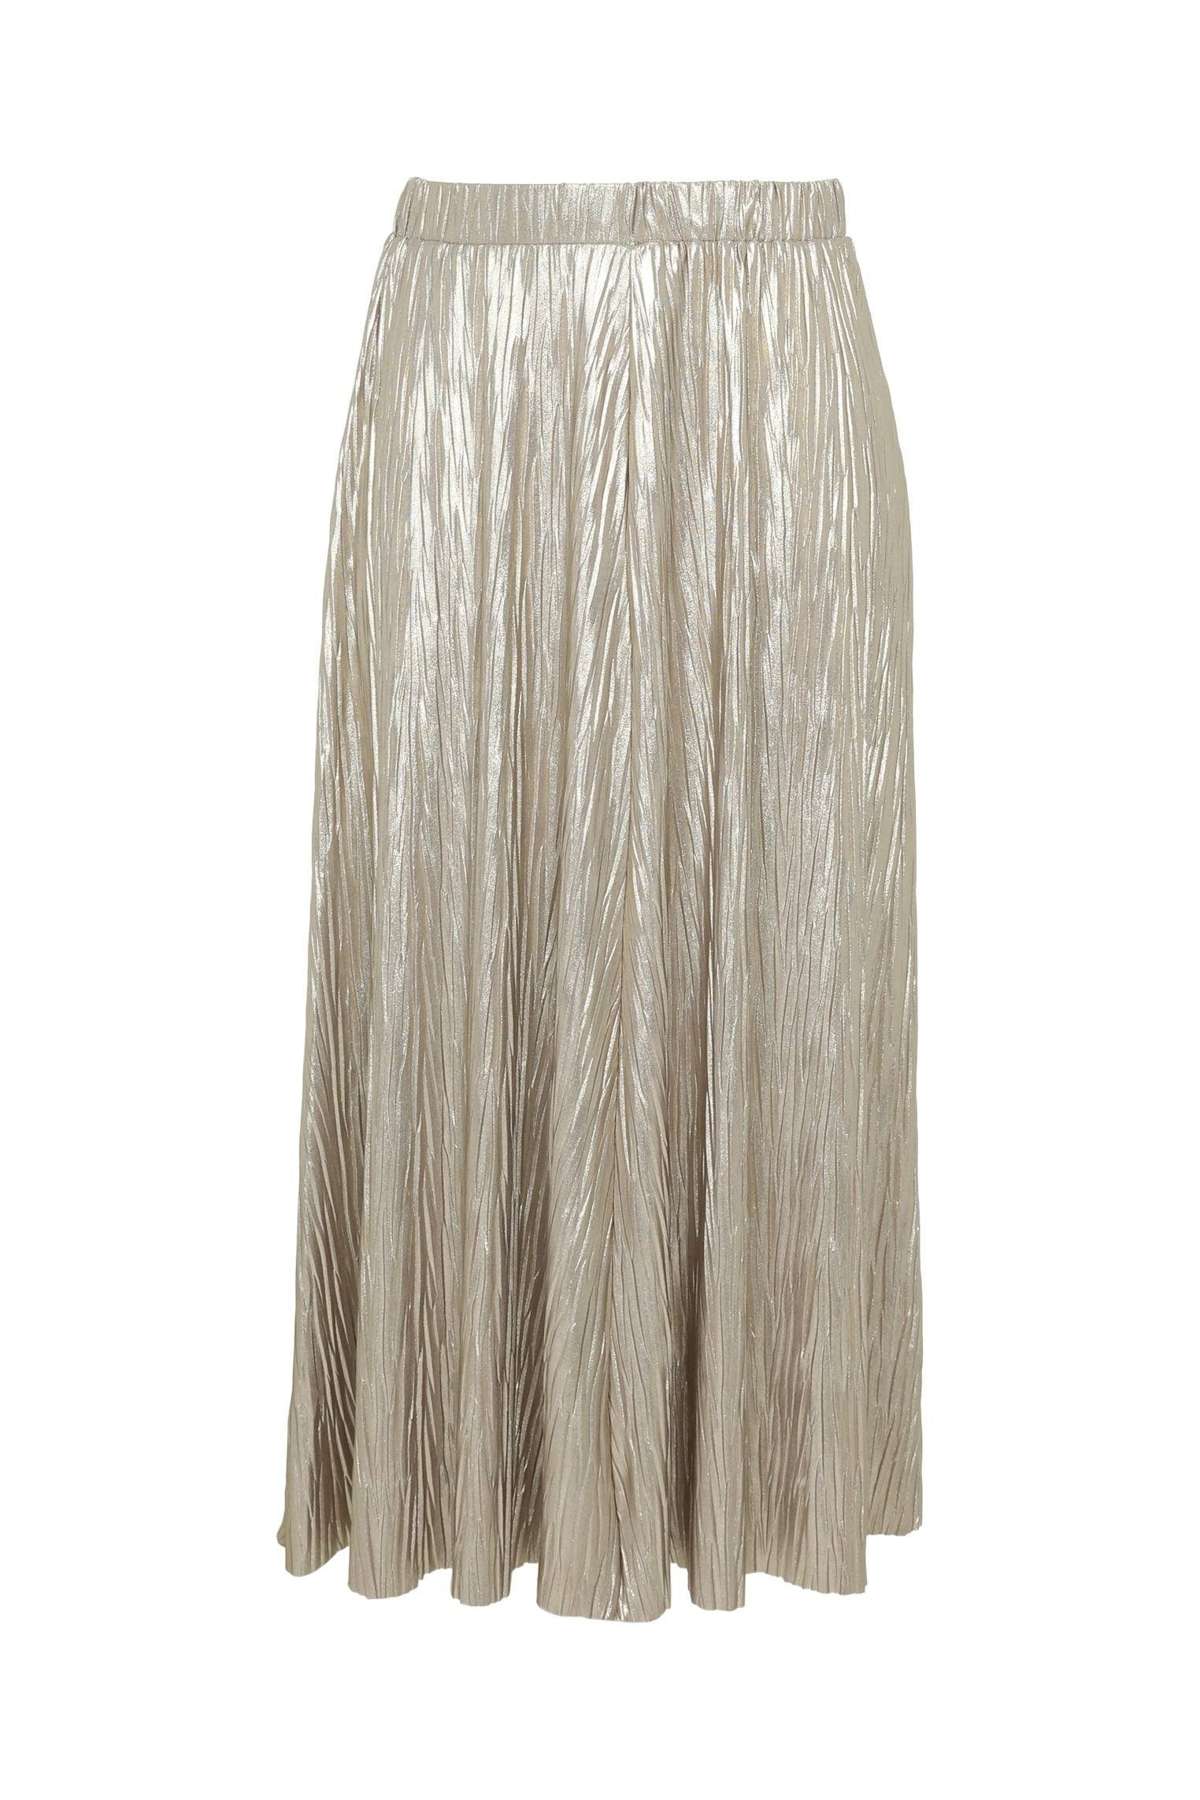 Юбка-трапеция длинная плиссированная юбка золотистого цвета с пайетками